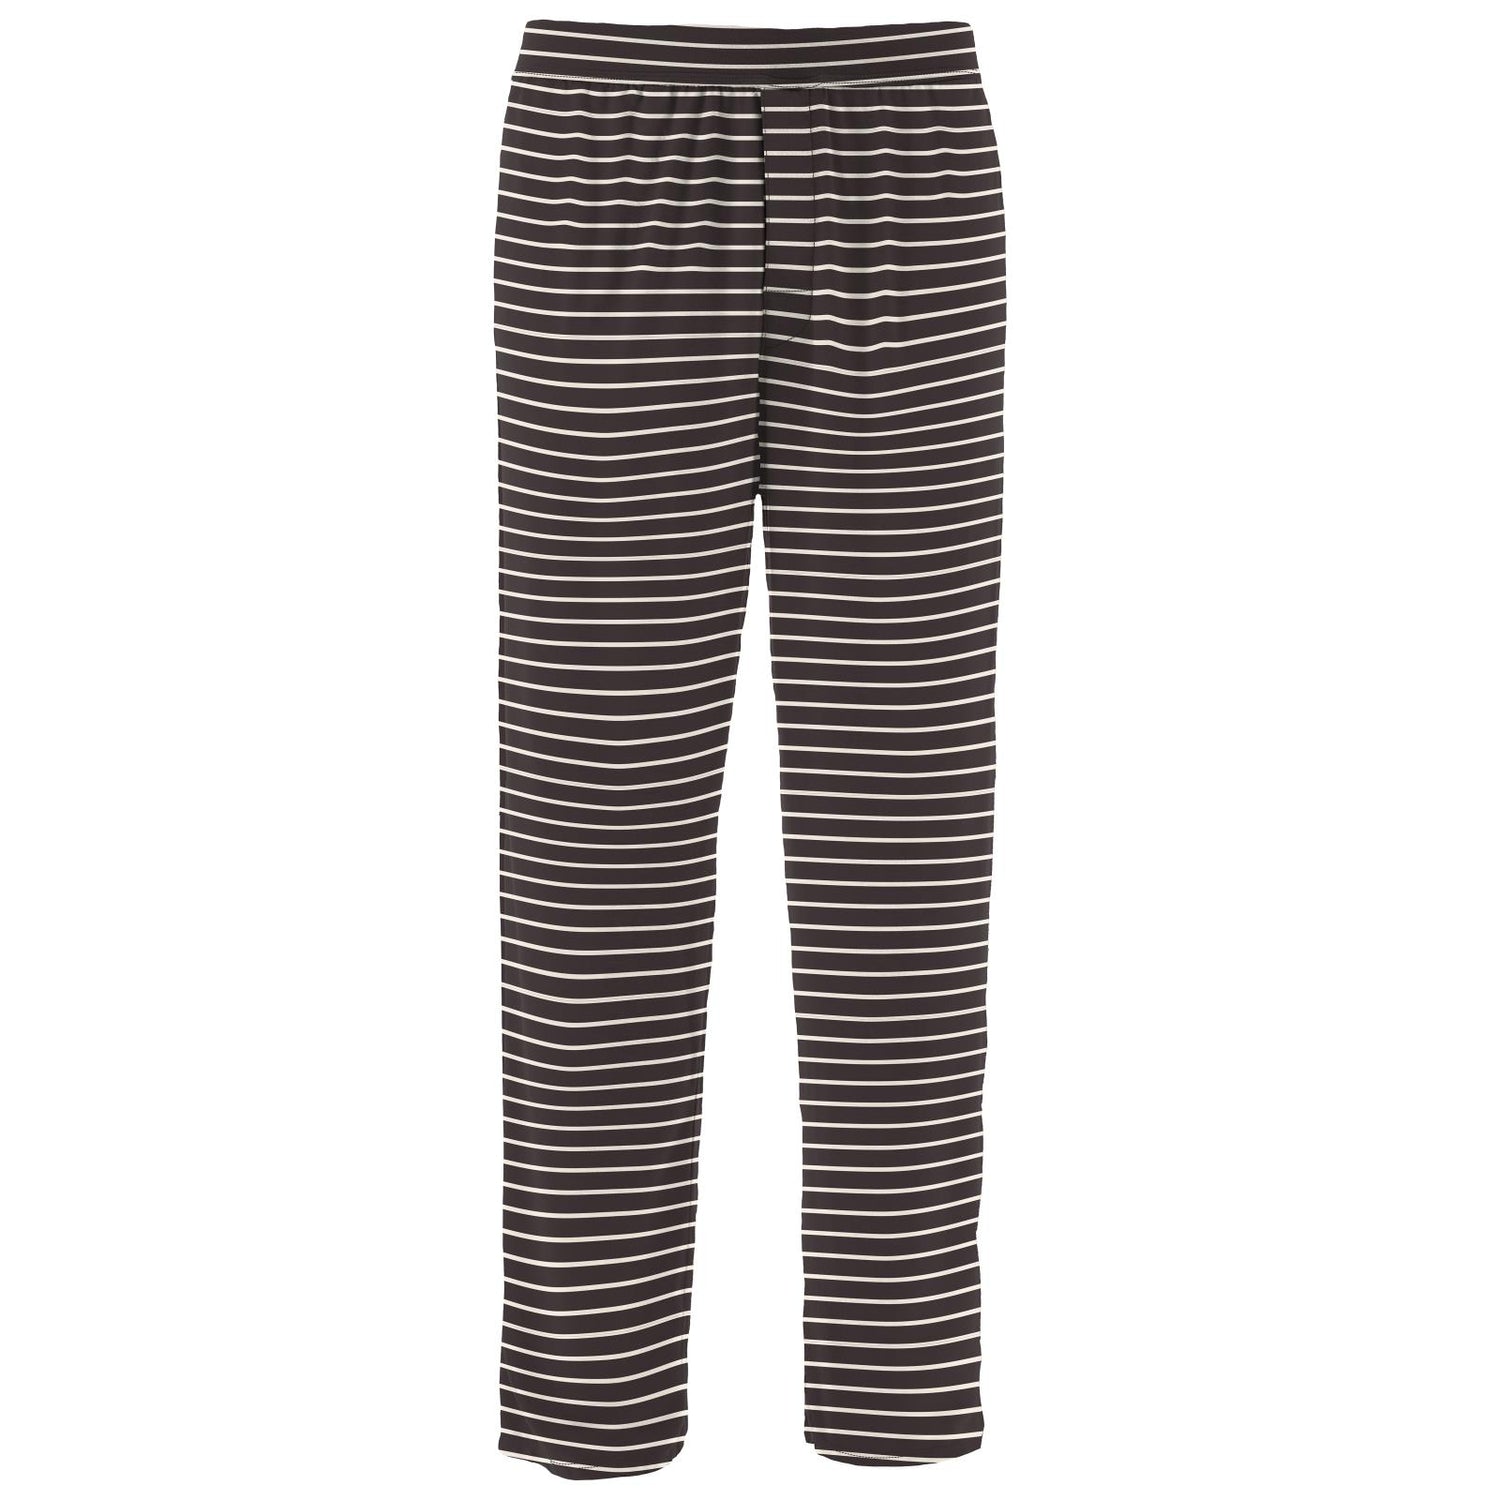 Men's Print Pajama Pants in 90's Stripe